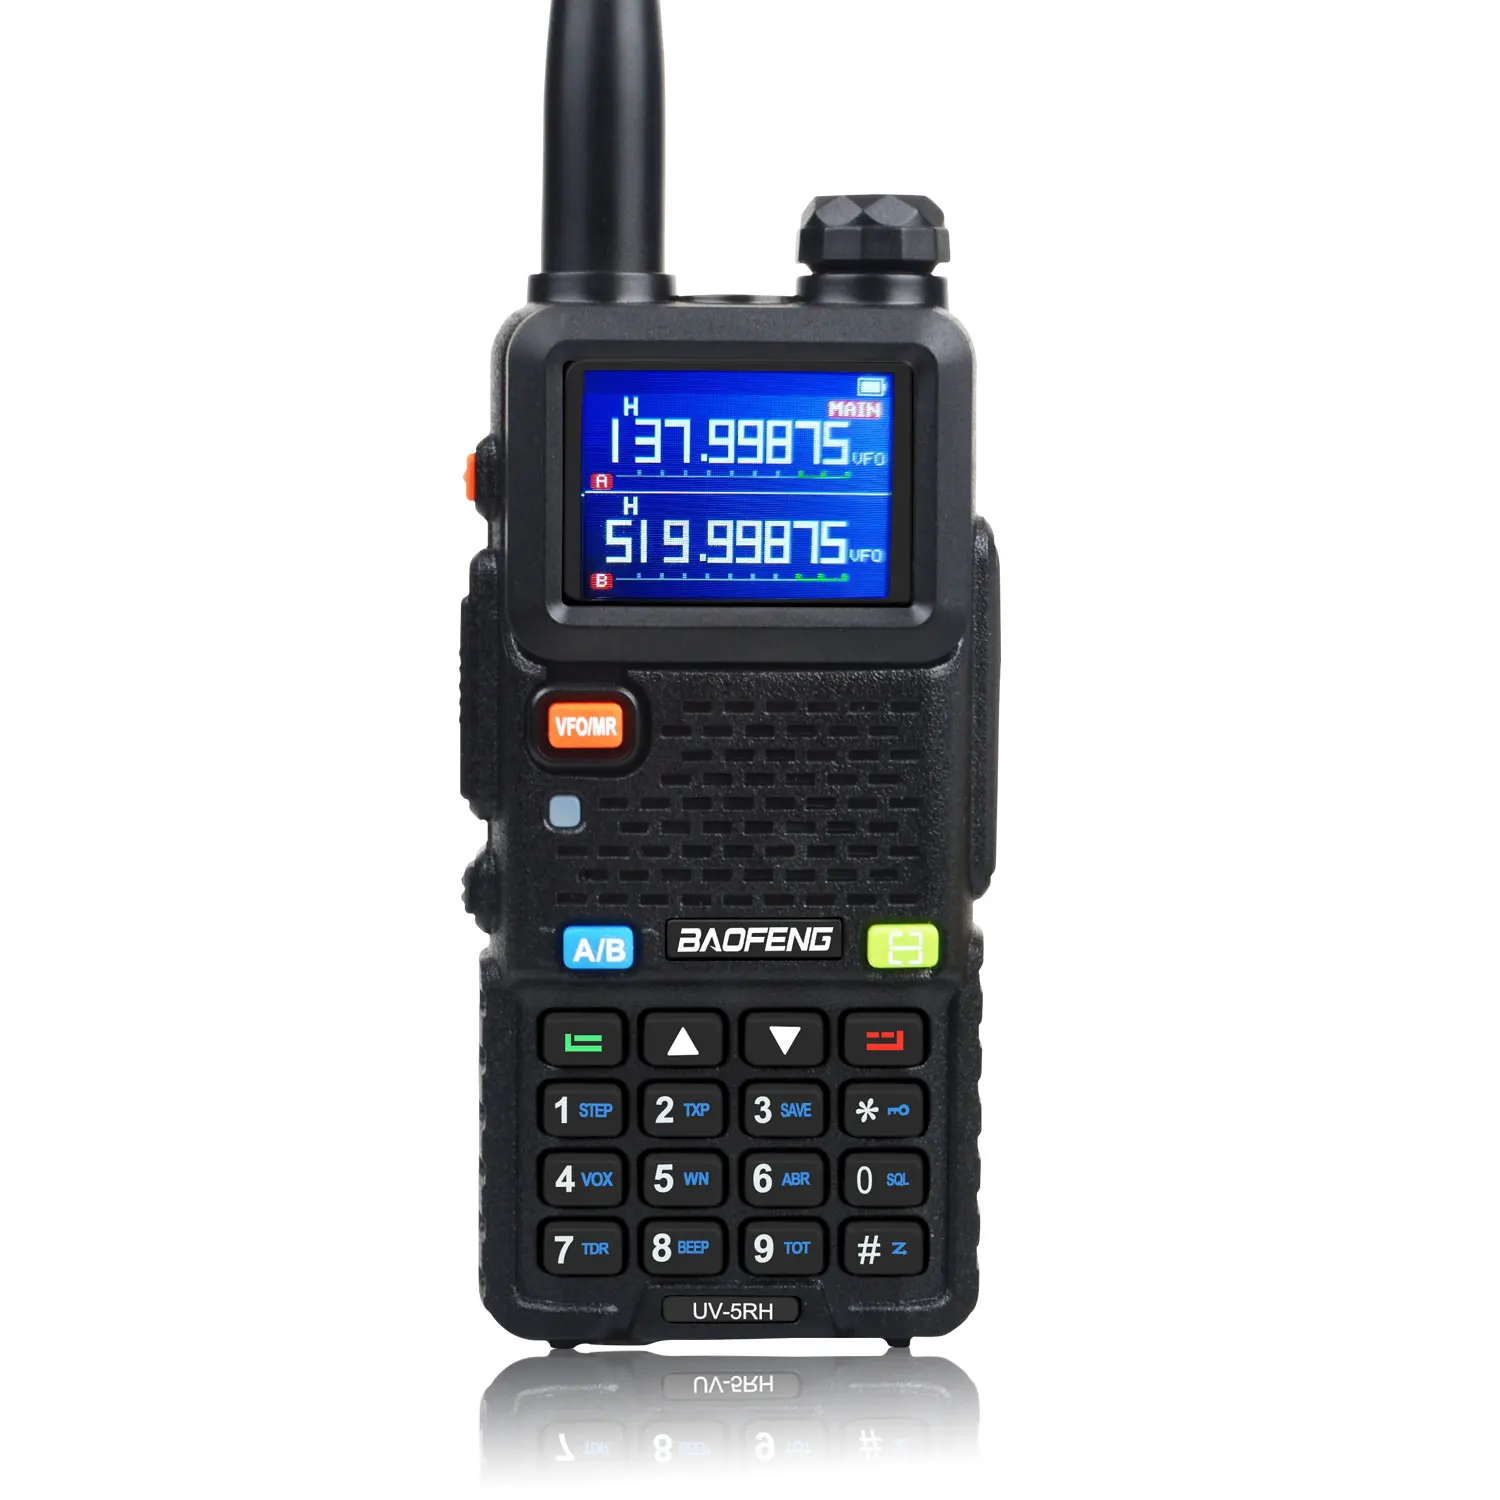 Портативная рация Baofeng UV-5RH 7W VHF UHF 136-174MHz 220-260MHz 400-520MHz Tri-Bands 999Ch, функция определения частоты, прогноз погоды, FM